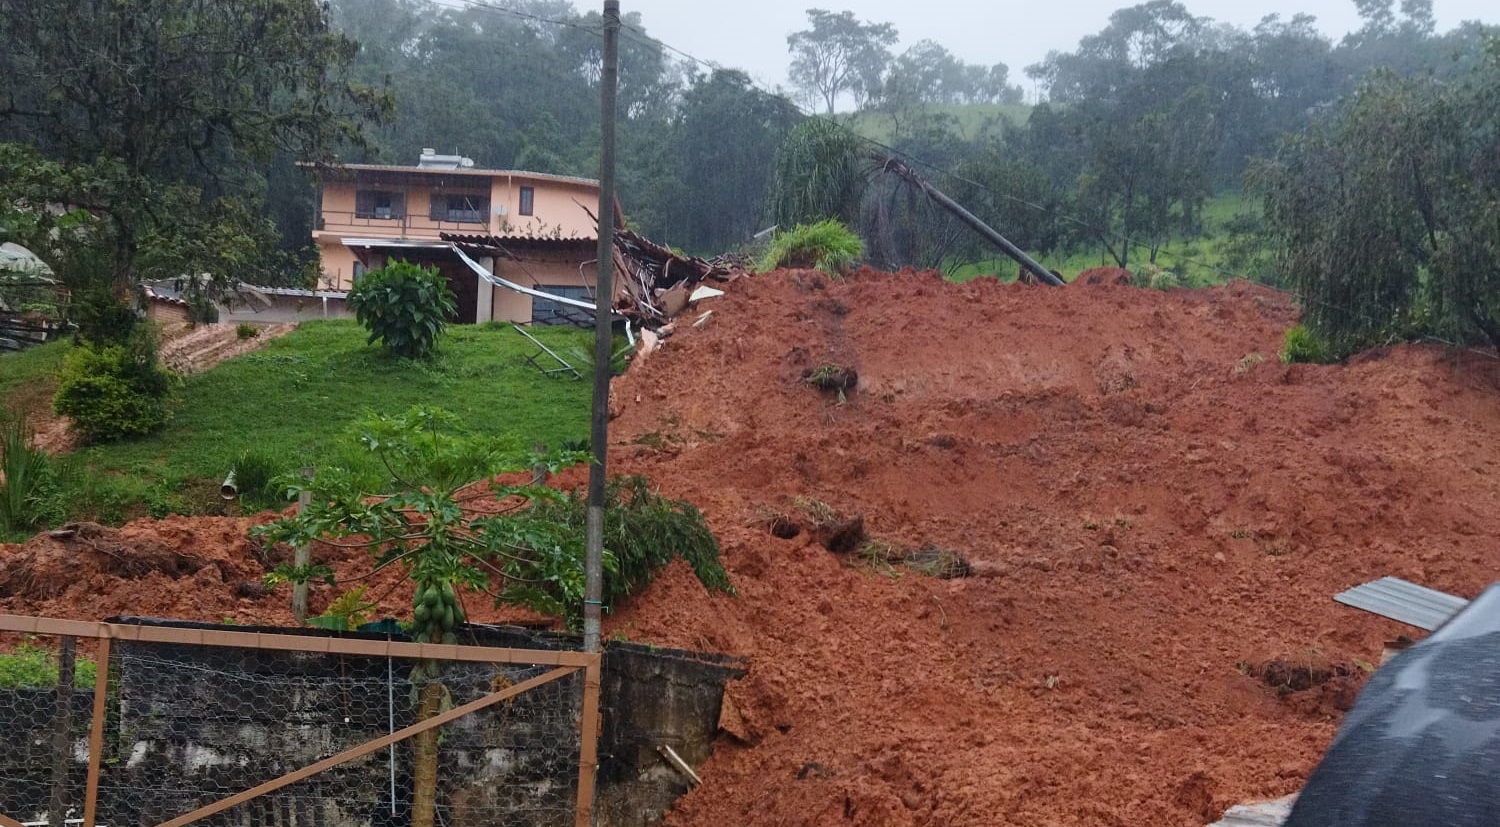 Chuvas em Itabirito causam prejuízos de mais de R$ 100 mil, perda de casas e estabelecimentos